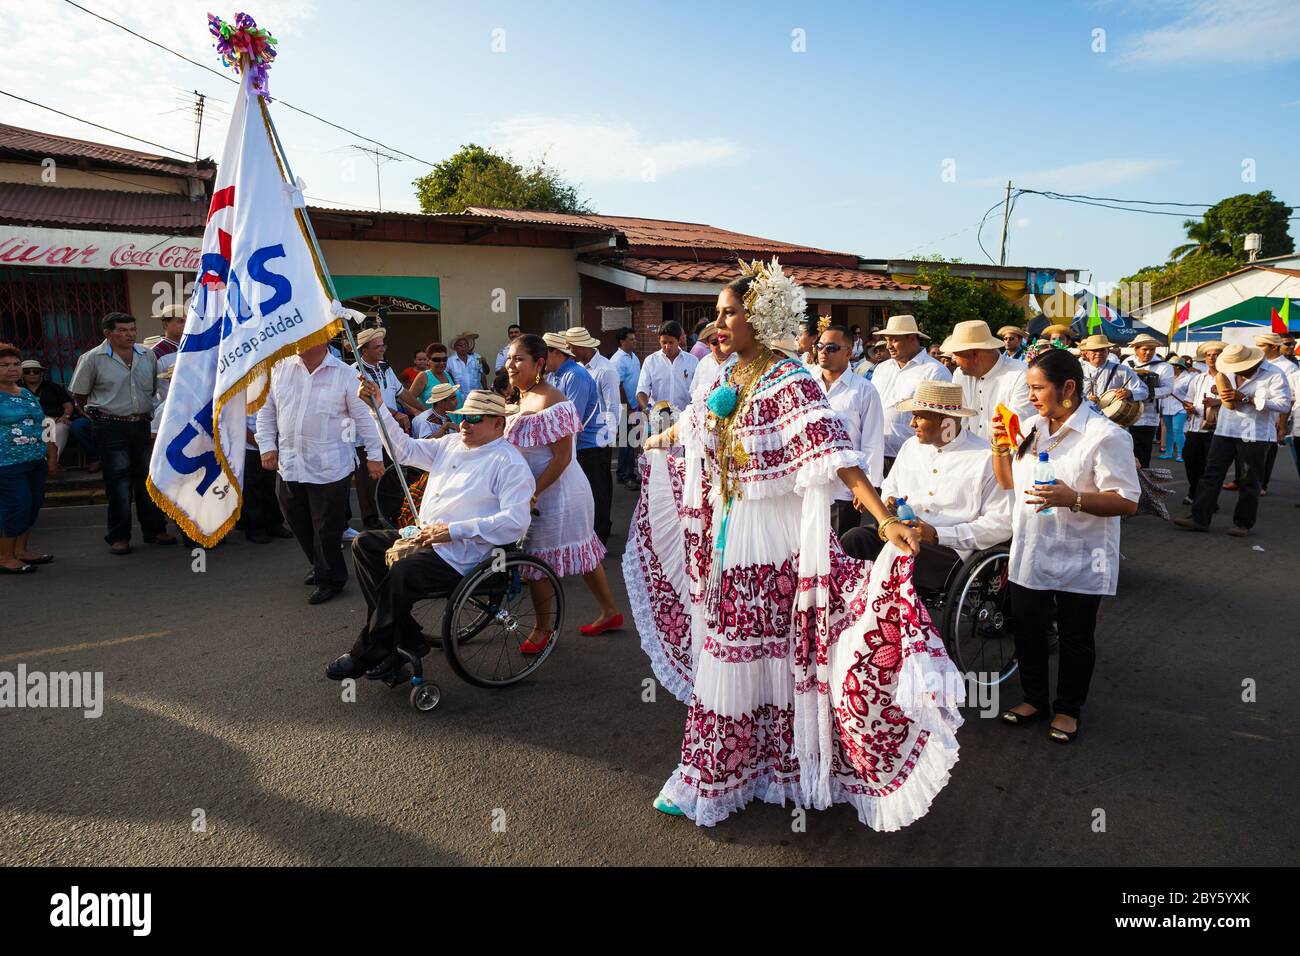 Panamanians on the annual event 'El desfile de las mil polleras' in Las Tablas, Los Santos province, Republic of Panama. Stock Photo